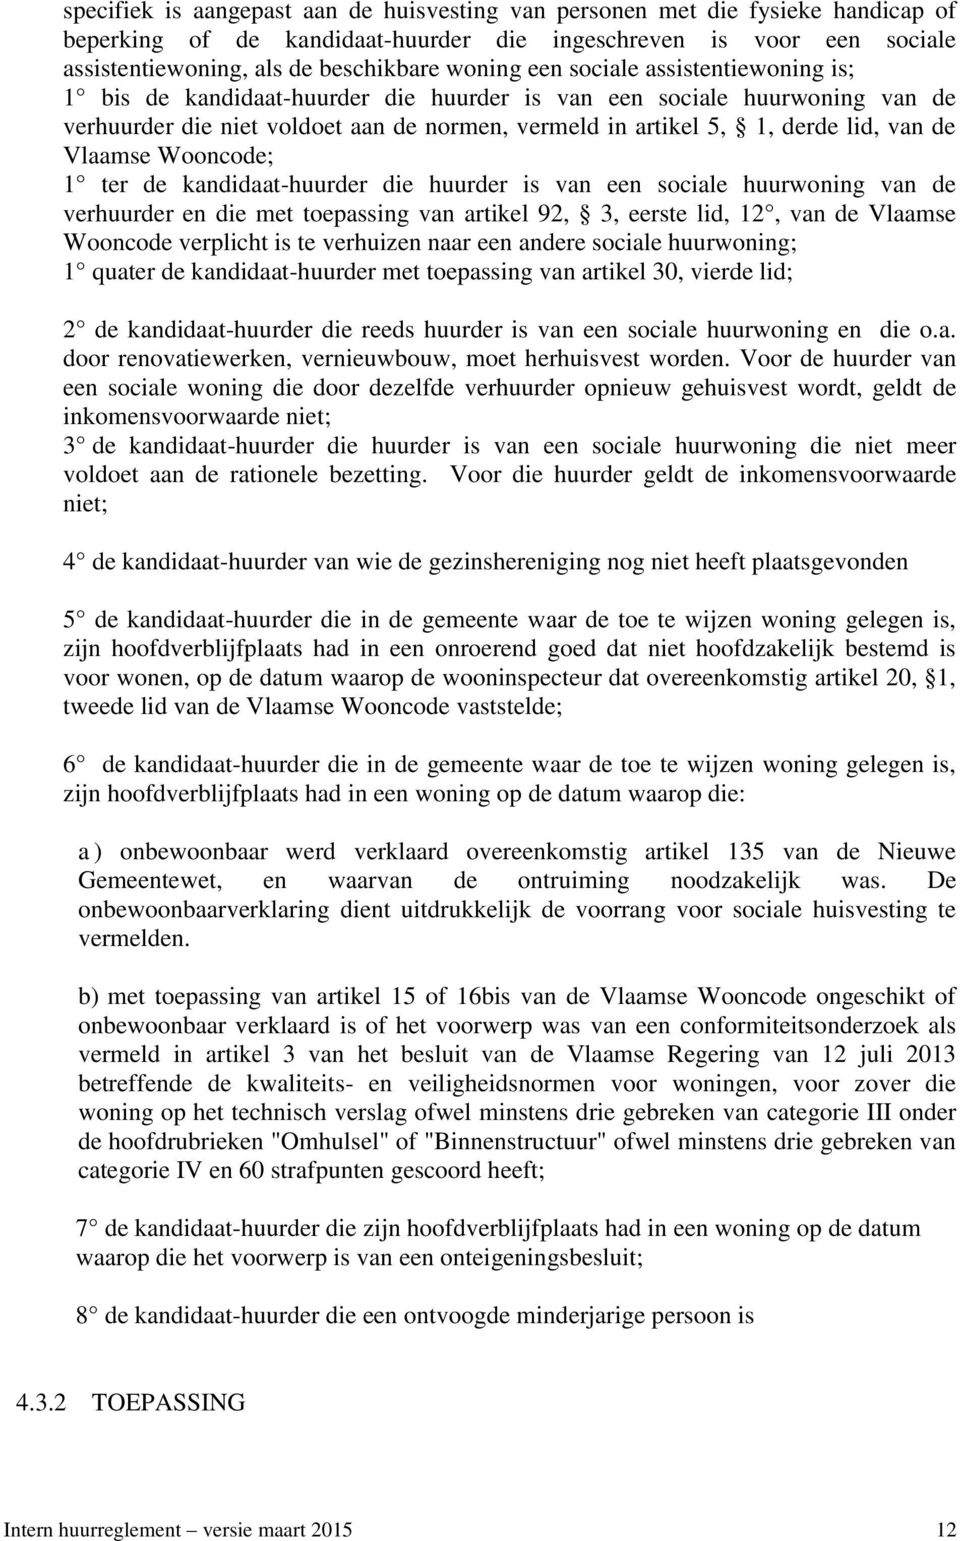 Vlaamse Wooncode; 1 ter de kandidaat-huurder die huurder is van een sociale huurwoning van de verhuurder en die met toepassing van artikel 92, 3, eerste lid, 12, van de Vlaamse Wooncode verplicht is